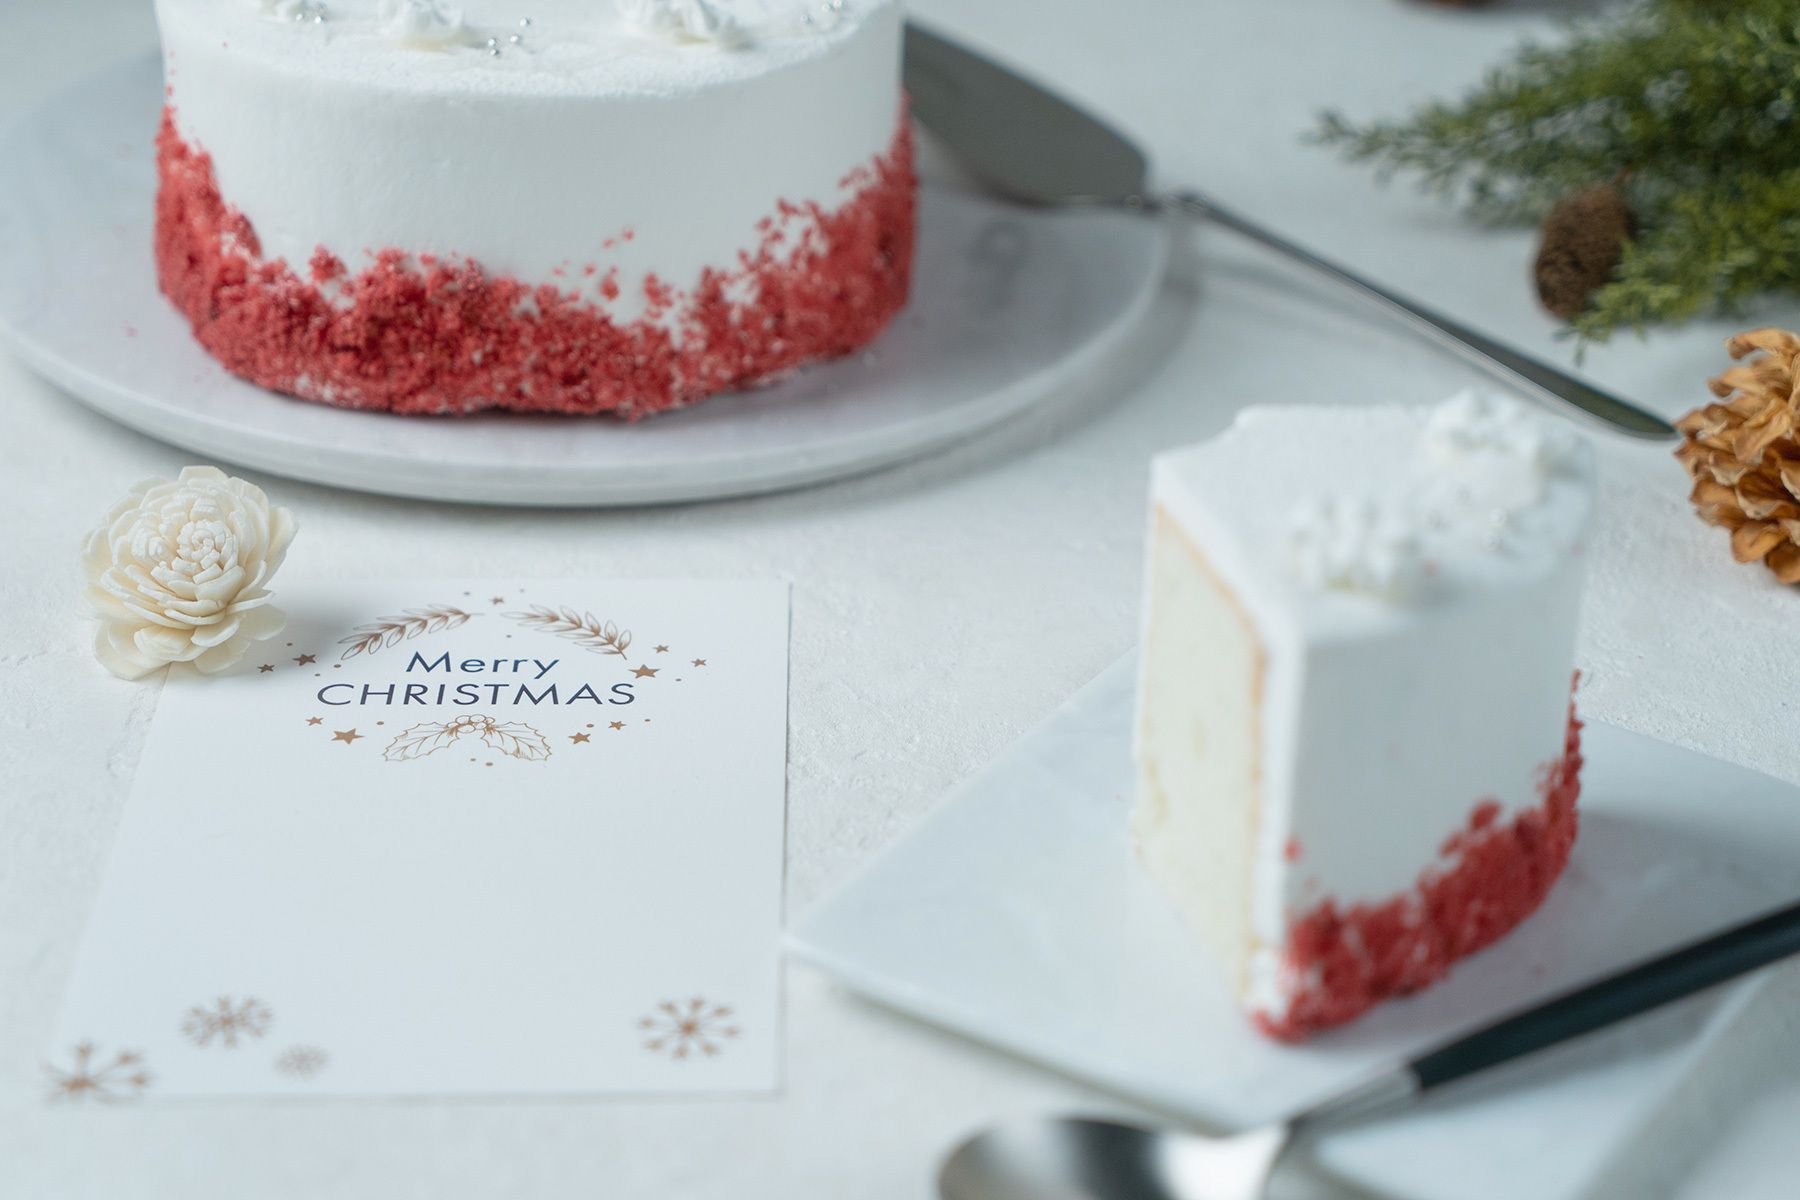 【新商品】シフォンケーキ専門のオンラインストア「This is CHIFFON CAKE.」より数量限定 クリスマスシフォンケーキが登場！#Z世代Pick